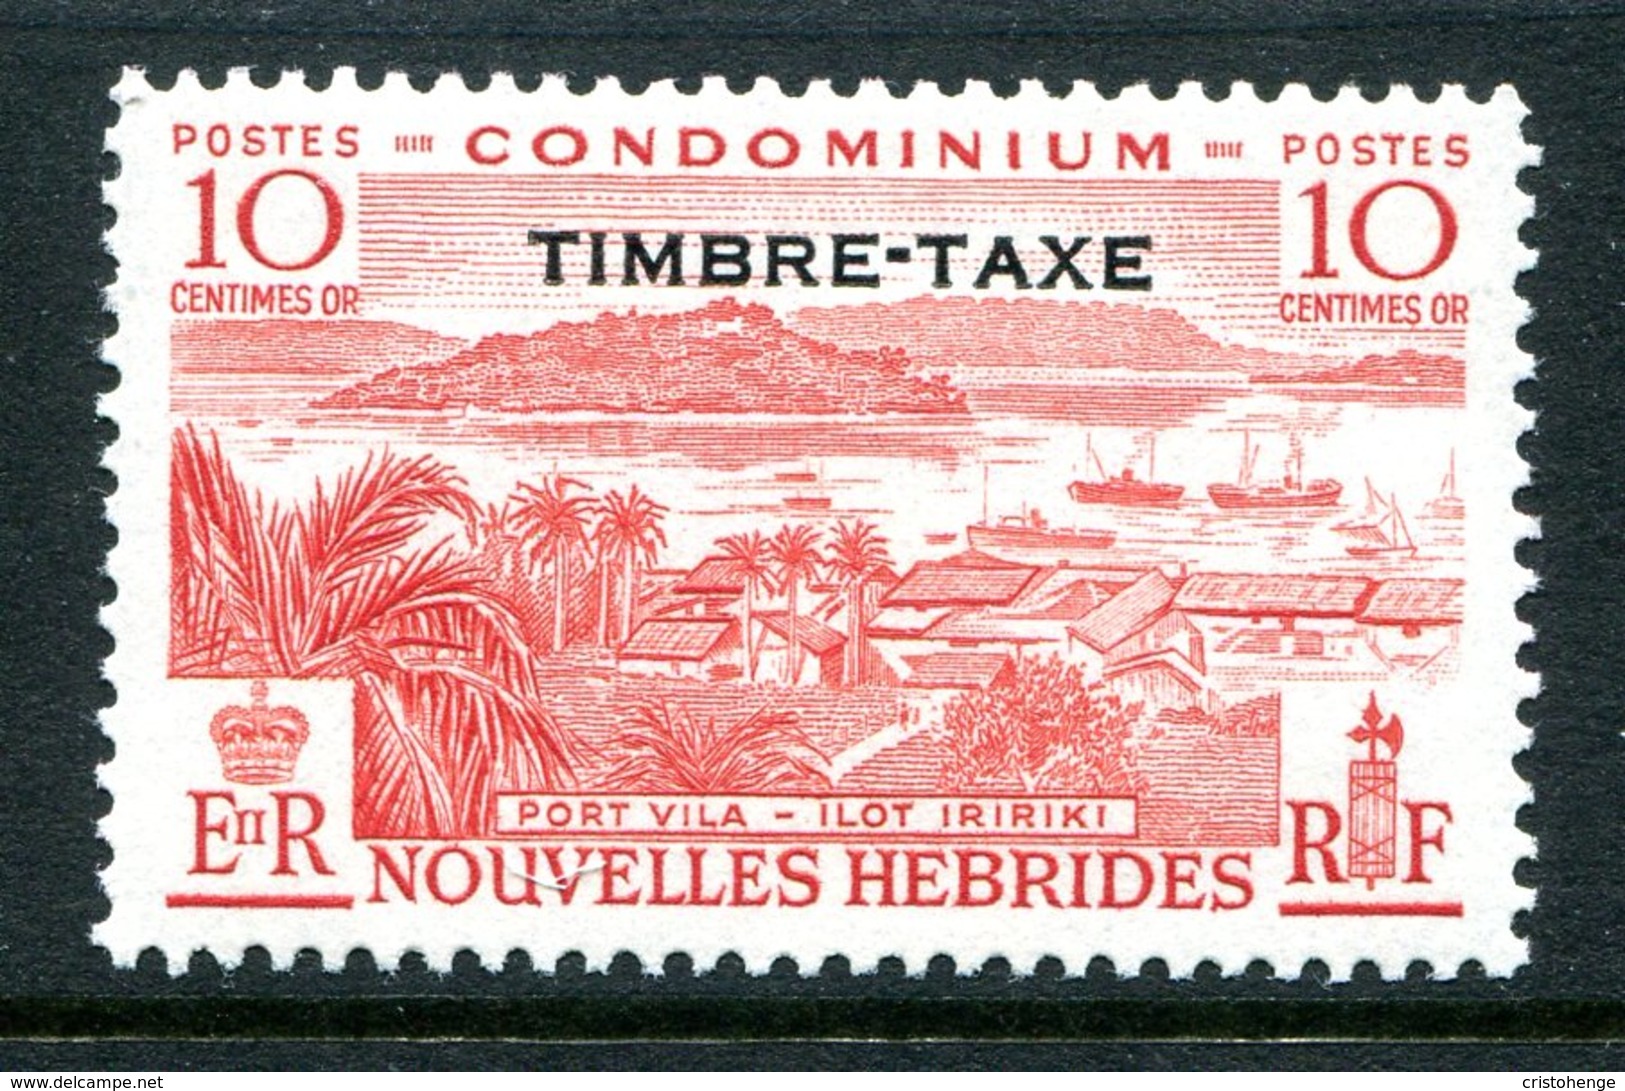 Nouvelles Hebrides 1957 Postage Due - 10c Value HM (SG FD108) - Postage Due